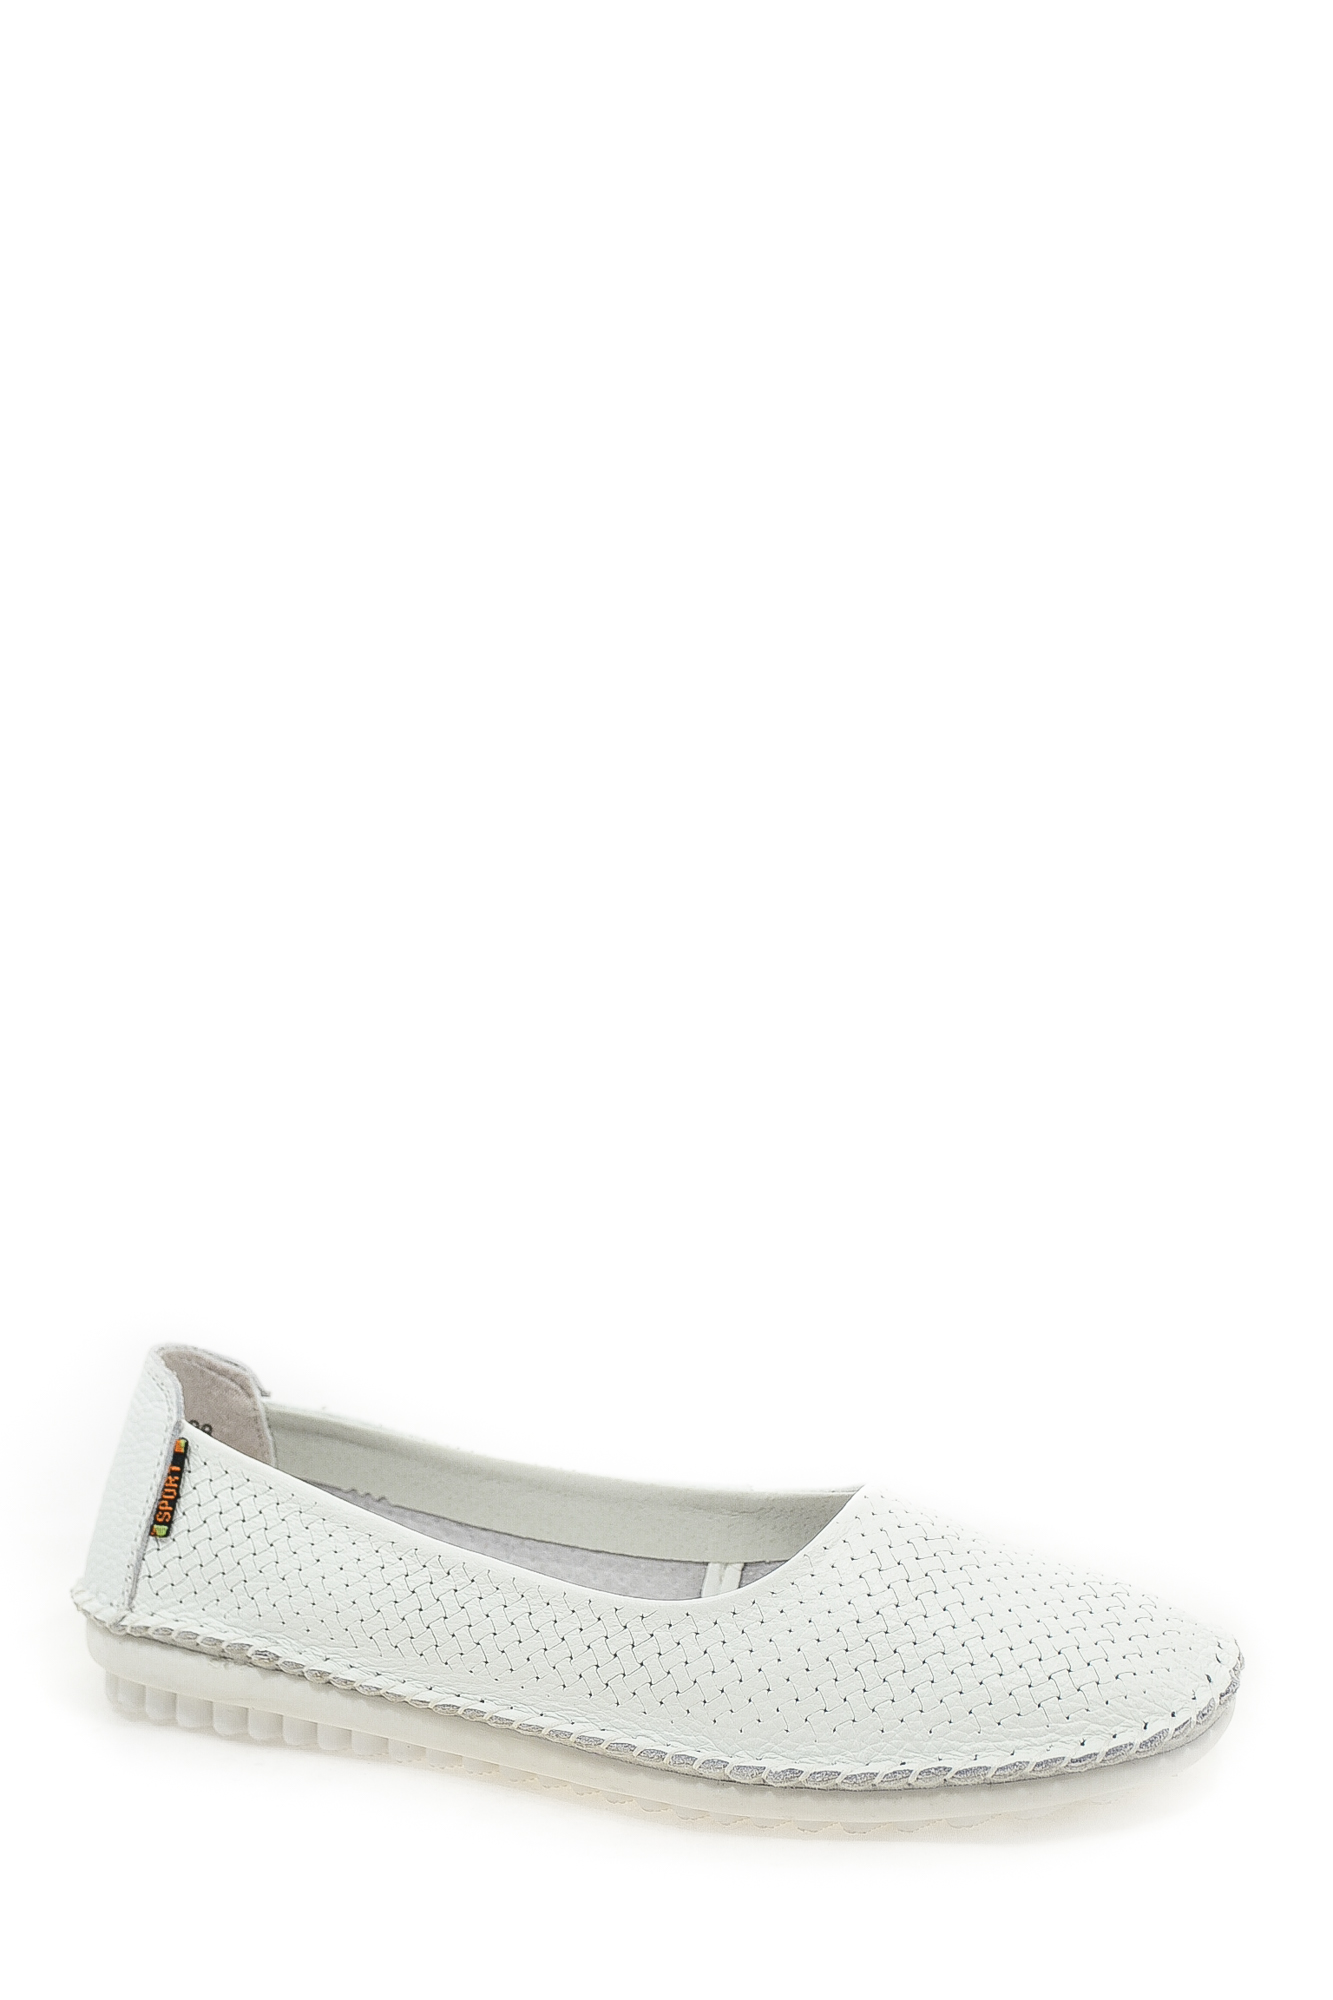 Туфли натуральная кожа Lifexpert Lifexpert 17052-6K white цвет белый.